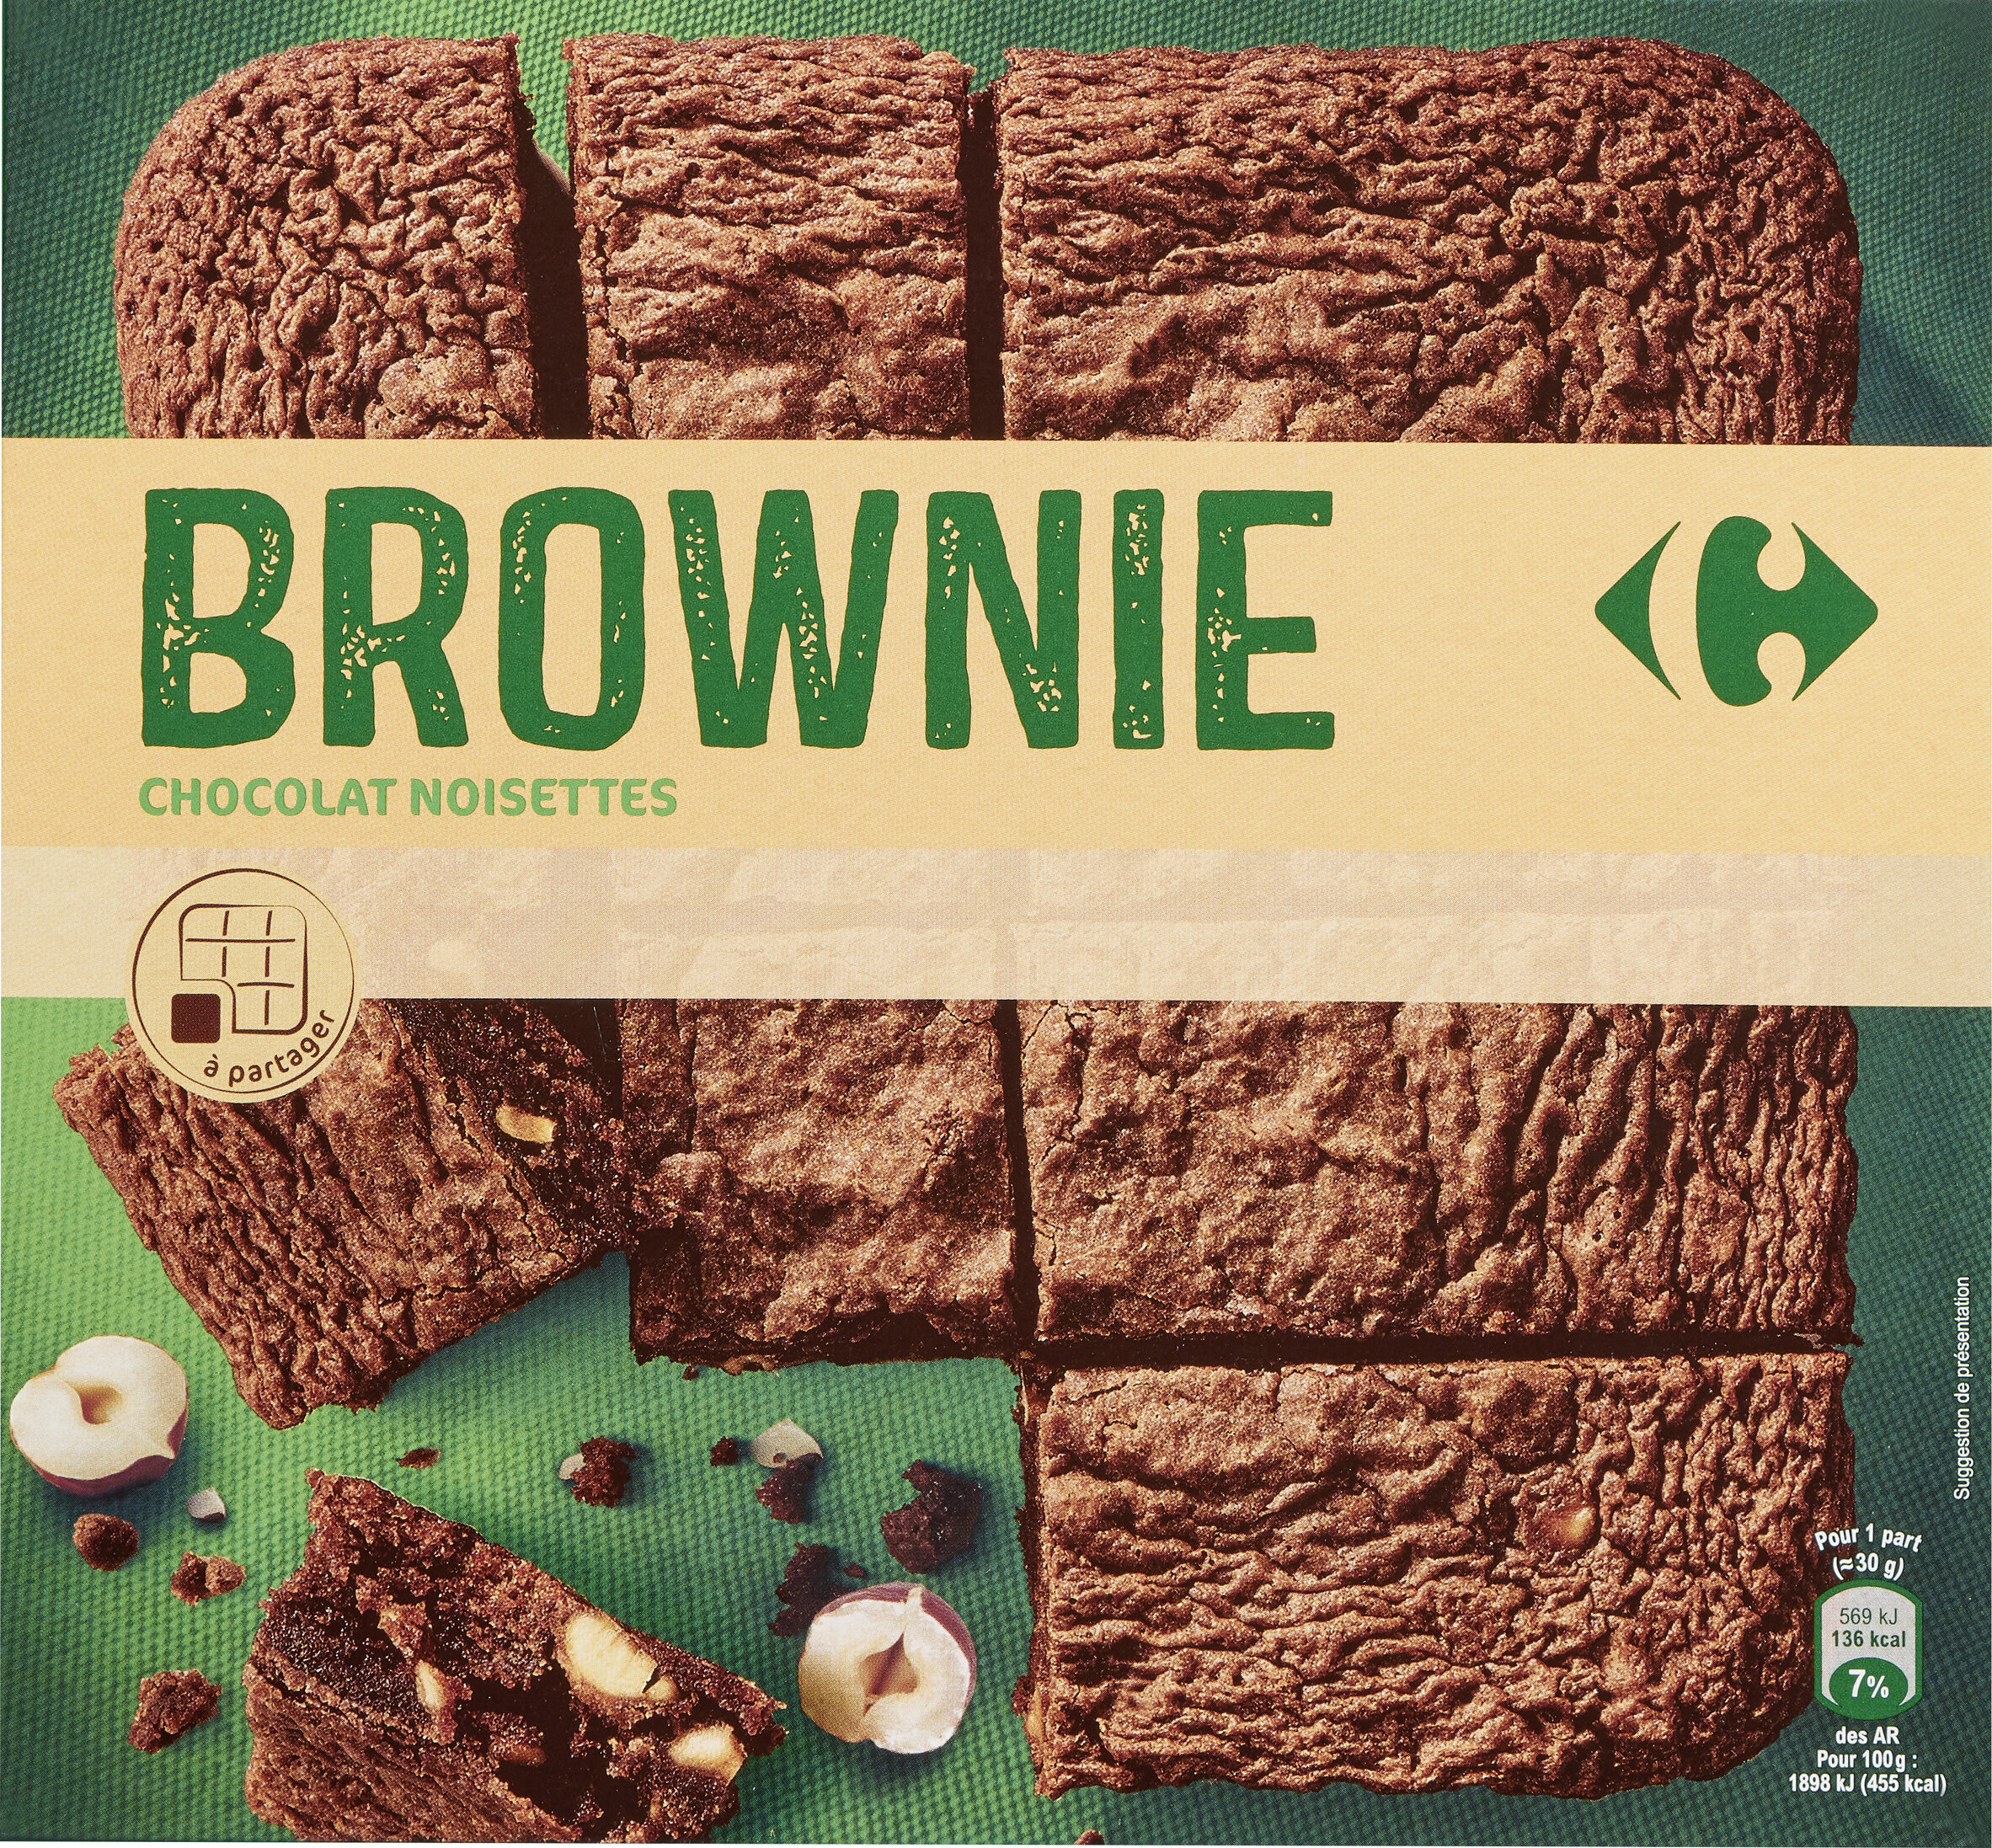 Brownie chocolat et noisettes - Produit